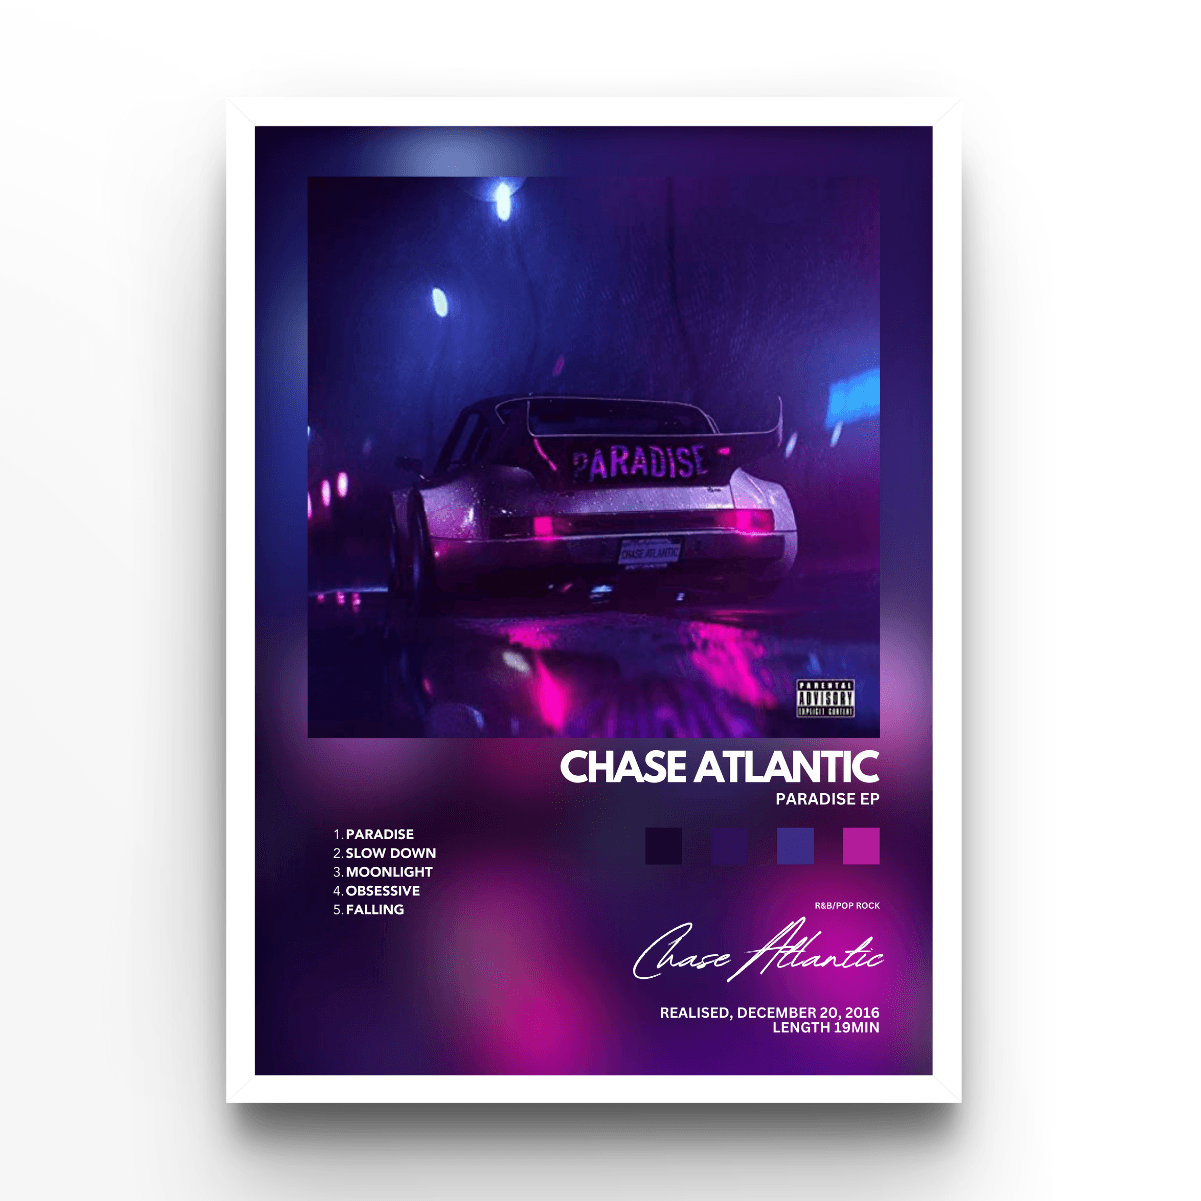 Chase Atlantic Paradise EP - A4, A3, A2 Posters Base - Poster Print Shop / Art Prints / PostersBase